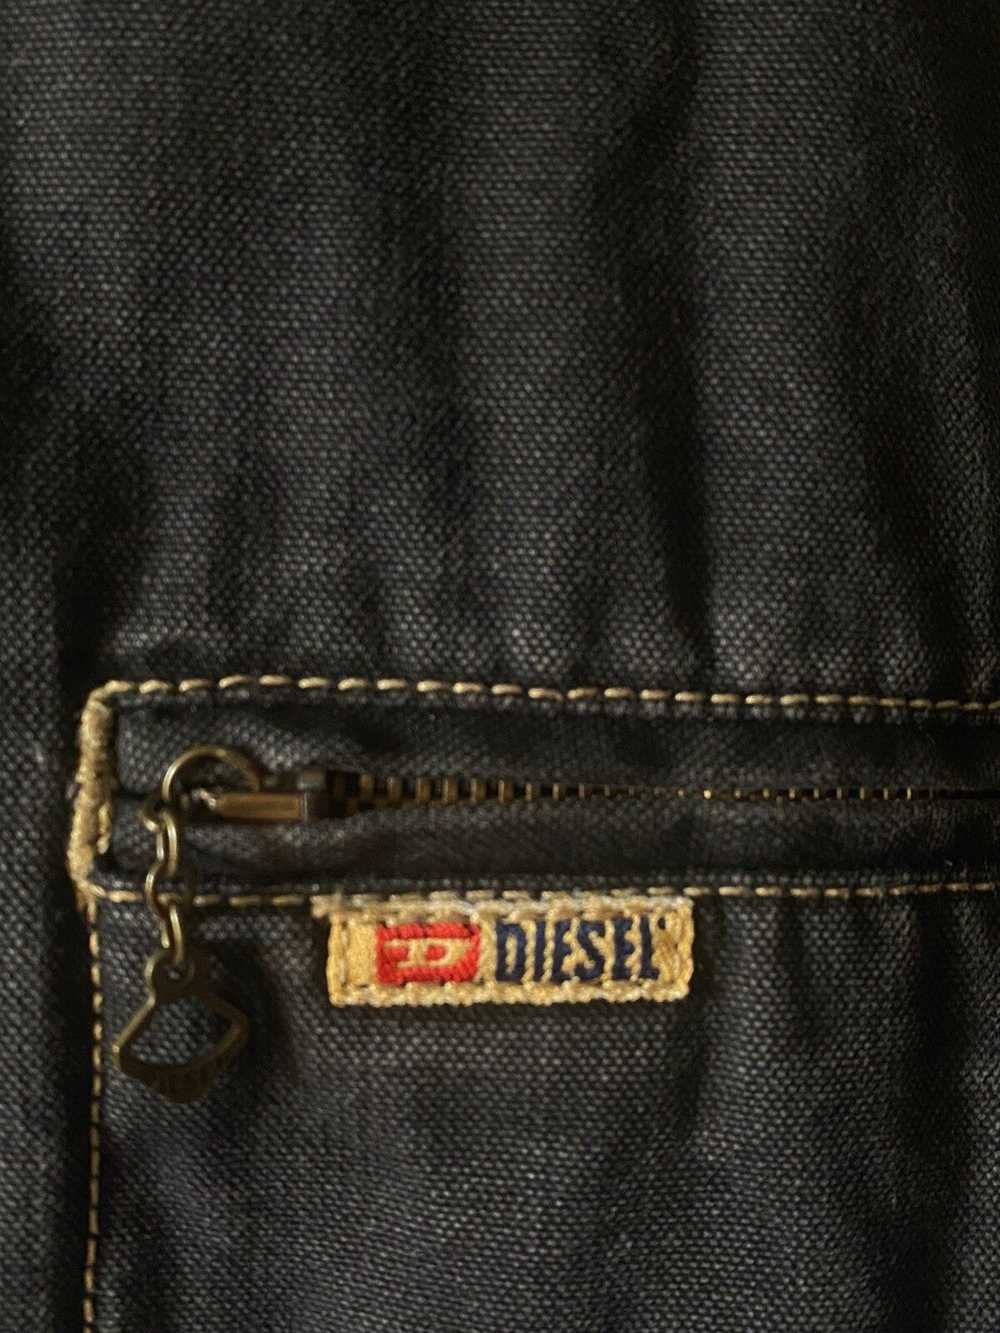 1990x Clothing × Diesel × Retro Jacket Vintage Re… - image 5